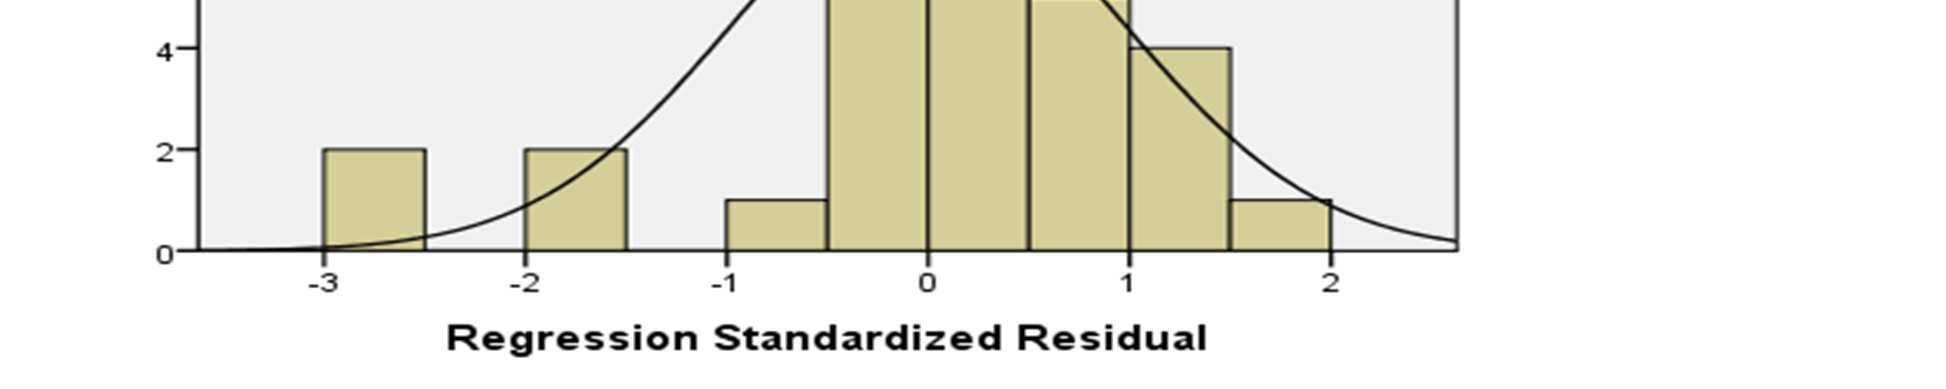 73 untuk melihat normalitas residual adalah dengan melihat grafik histogram dan normal probability plot yang membandingkan distribusi kumulatif dari data sesungguhnya dengan distribusi kumulatif dari